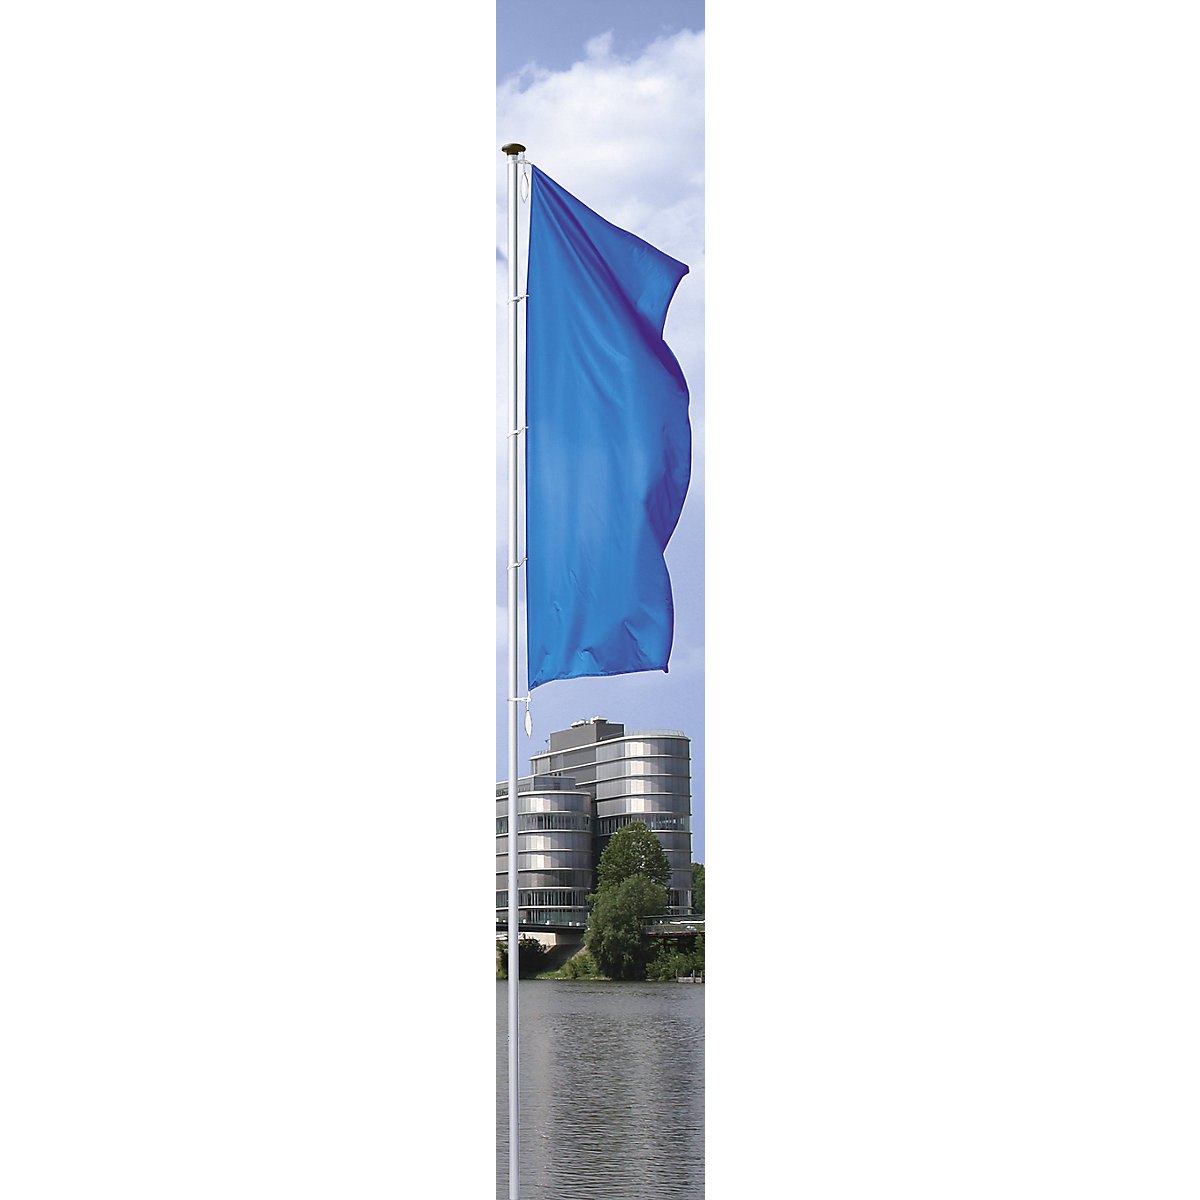 PIRAT aluminium flag pole - Mannus